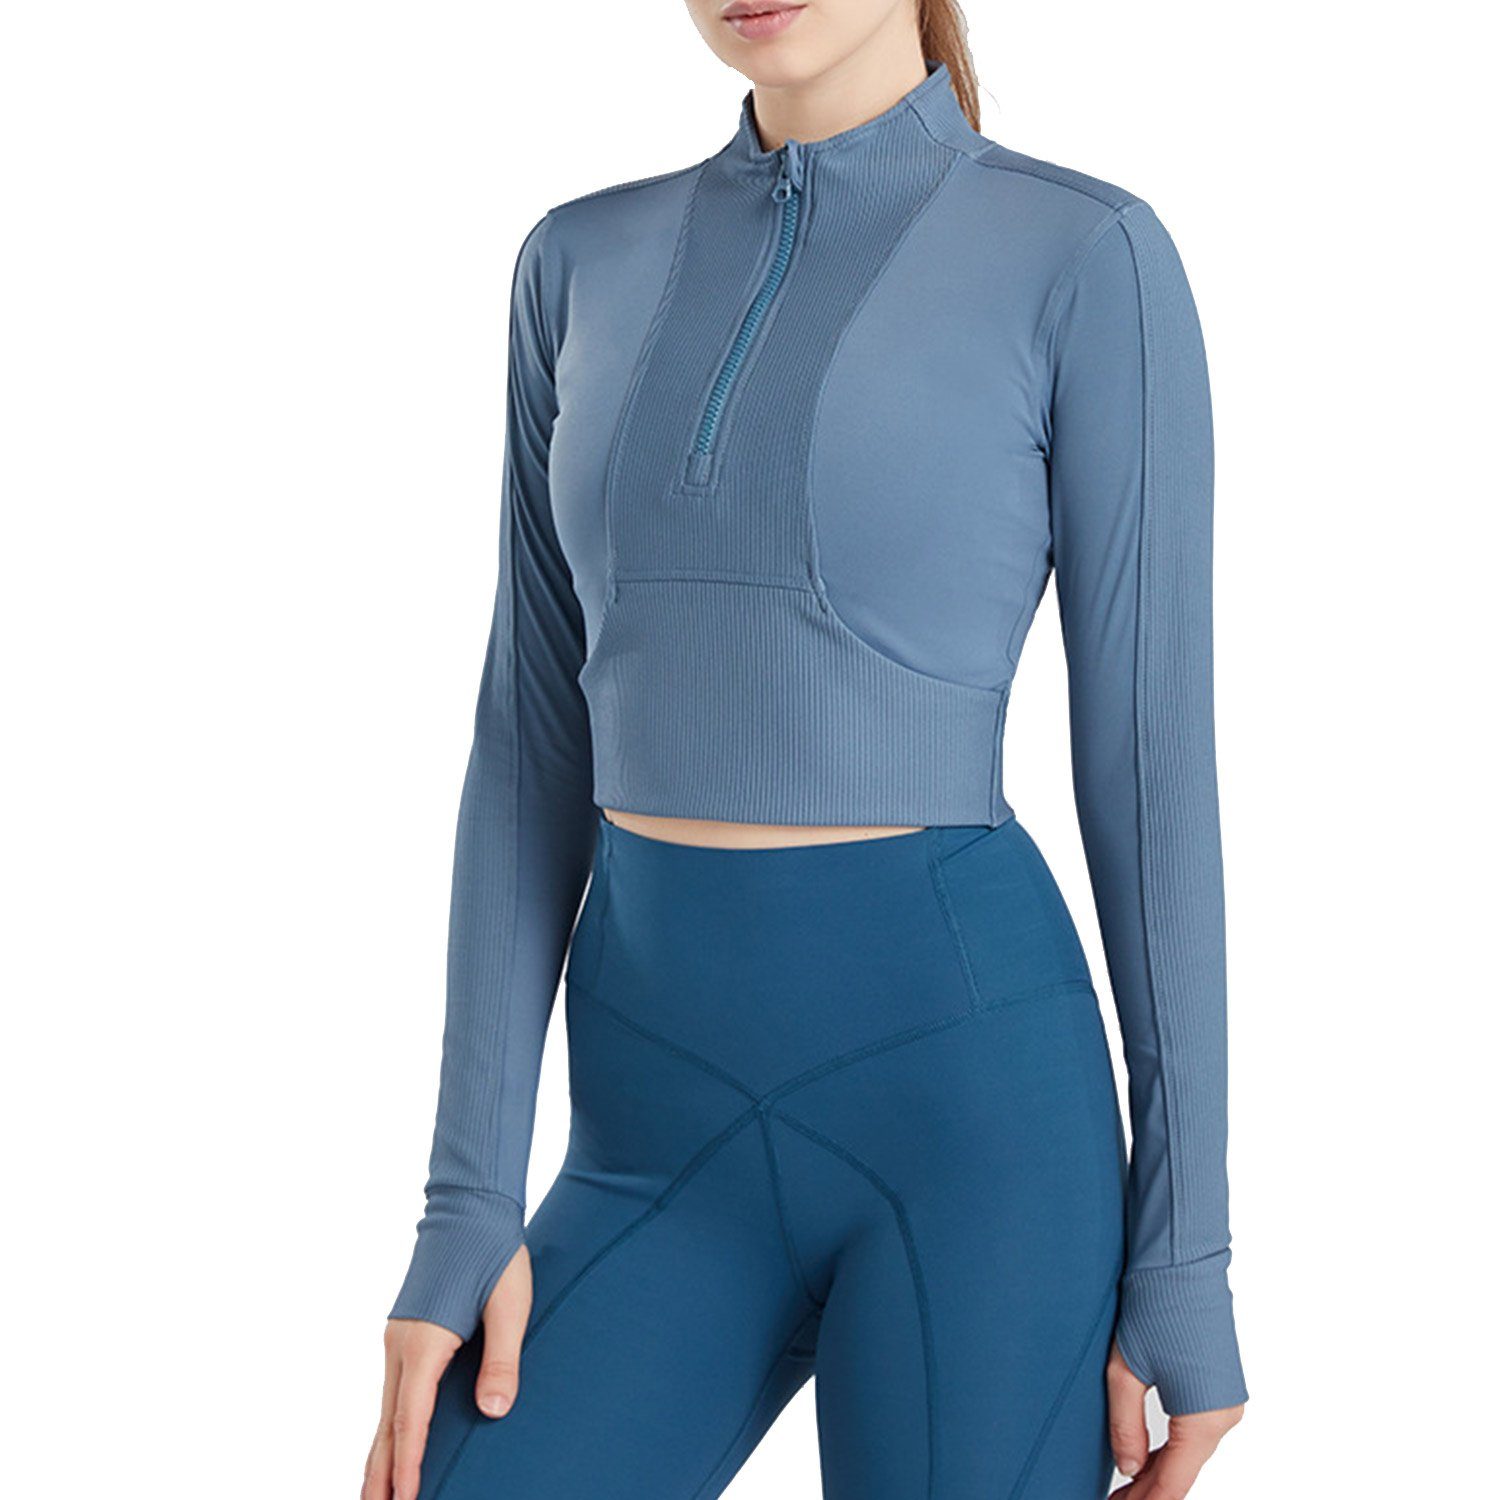 MAGICSHE Funktionsshirt Design Reißverschluss Fitness T-Shirt Halber Damen Sweatshirt Brust Leicht blau Top